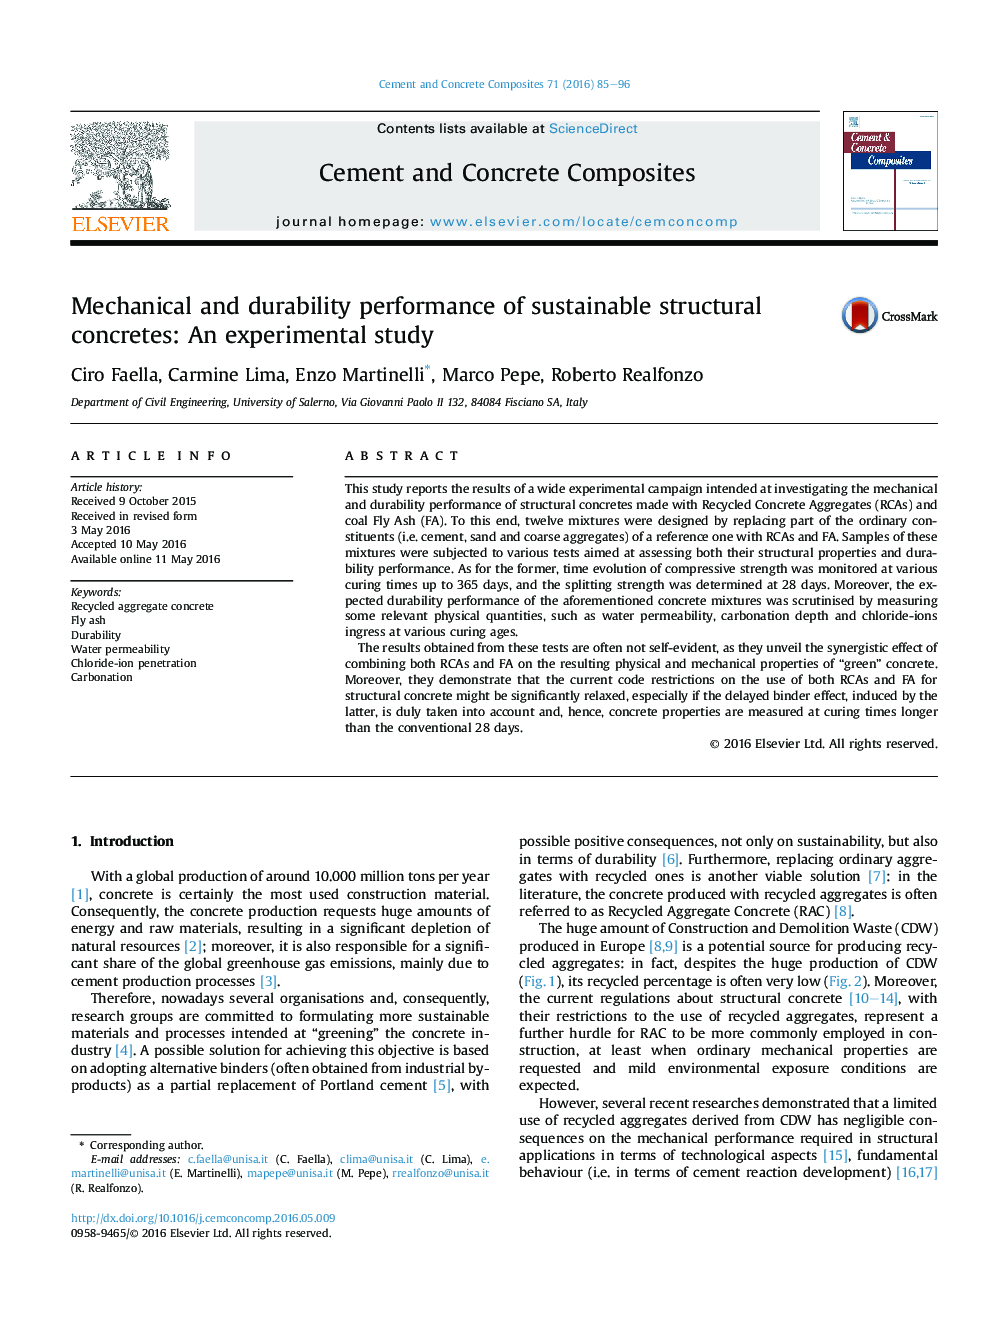 عملکرد مکانیکی و دوام بتن های ساختاری پایدار: یک مطالعه تجربی 